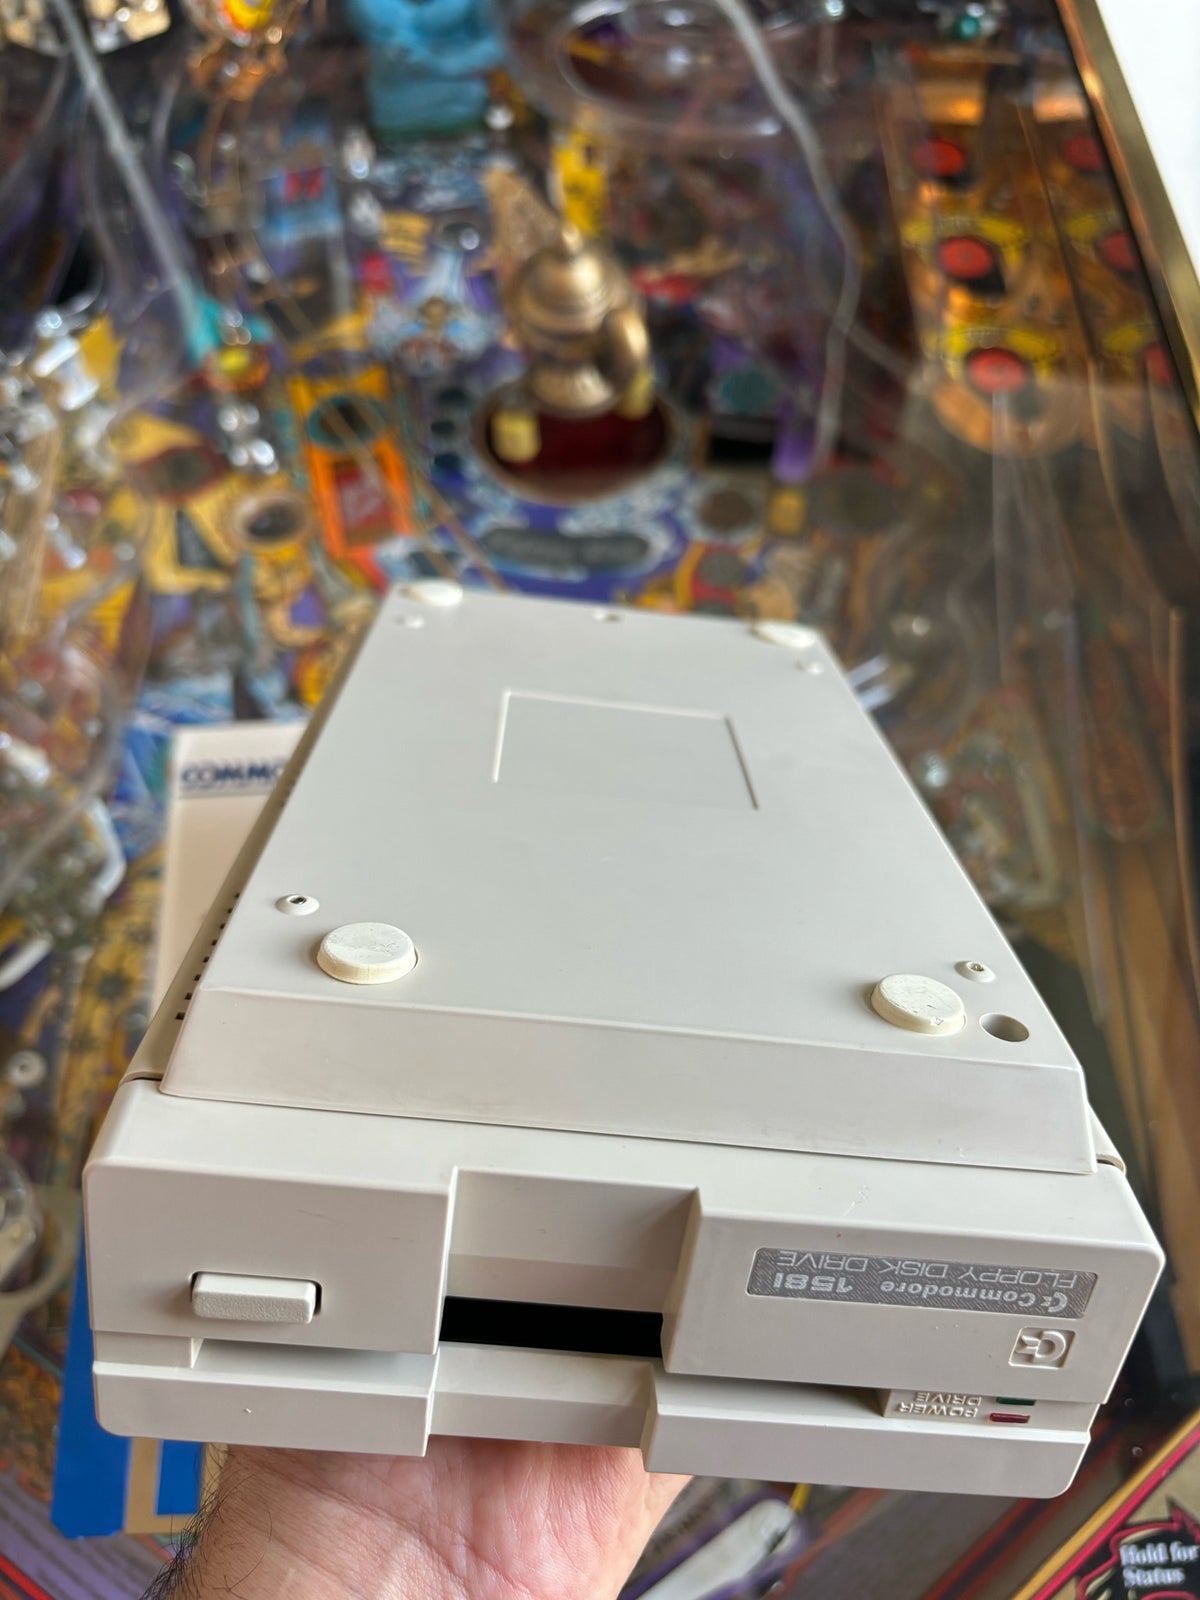 Commodore 1581 floppy disk drev, spillekonsol